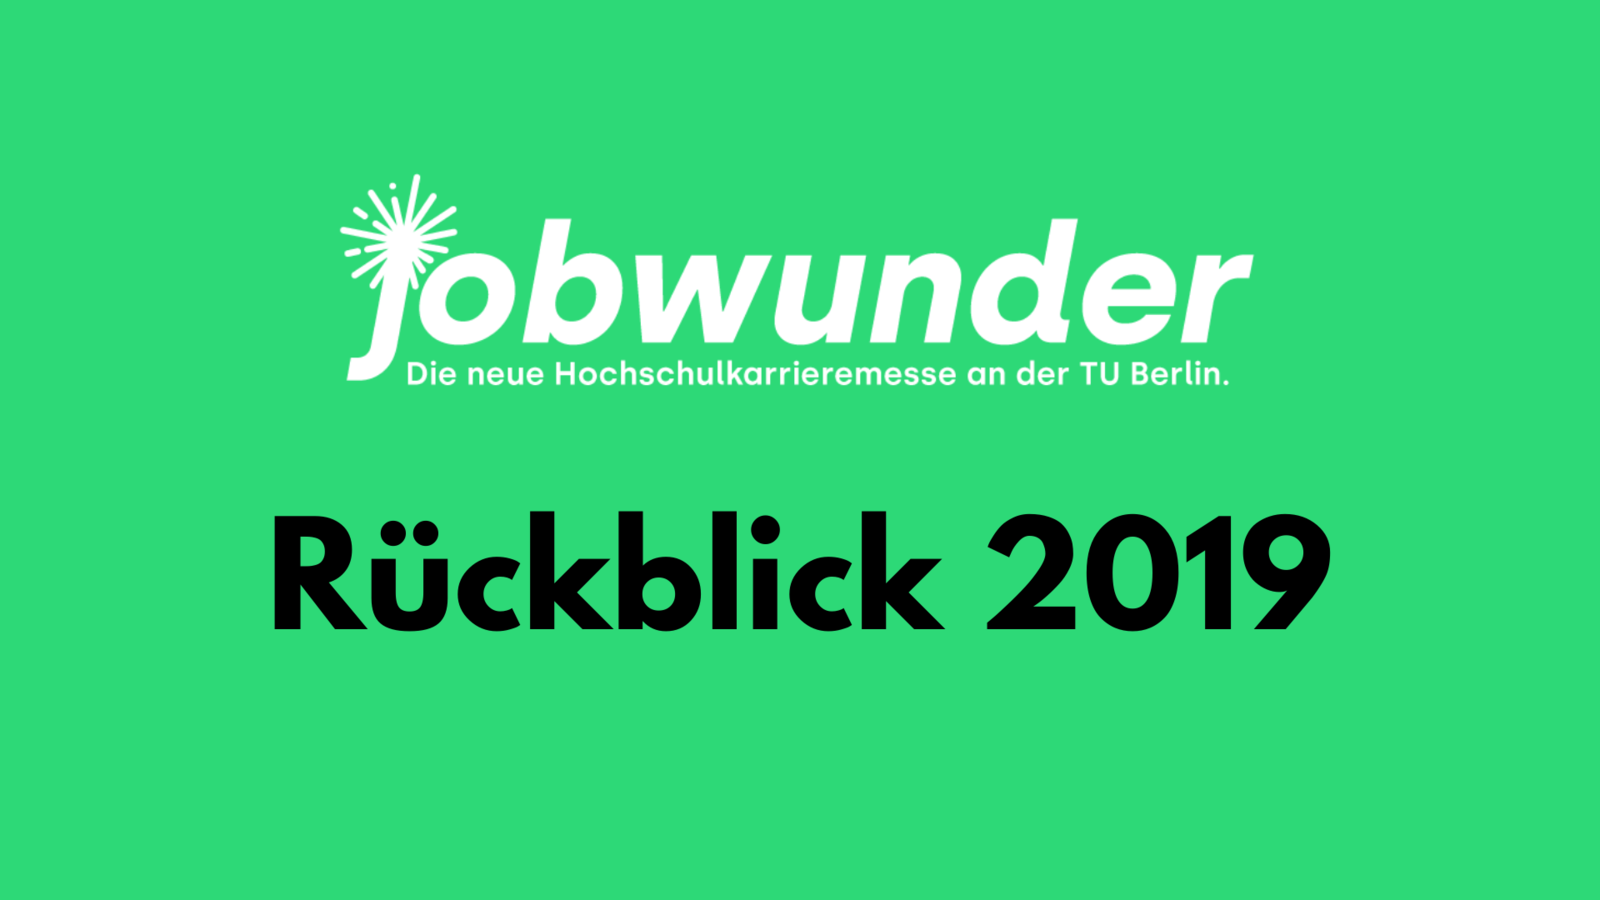 Vorschau_Video_Jobwunder2019